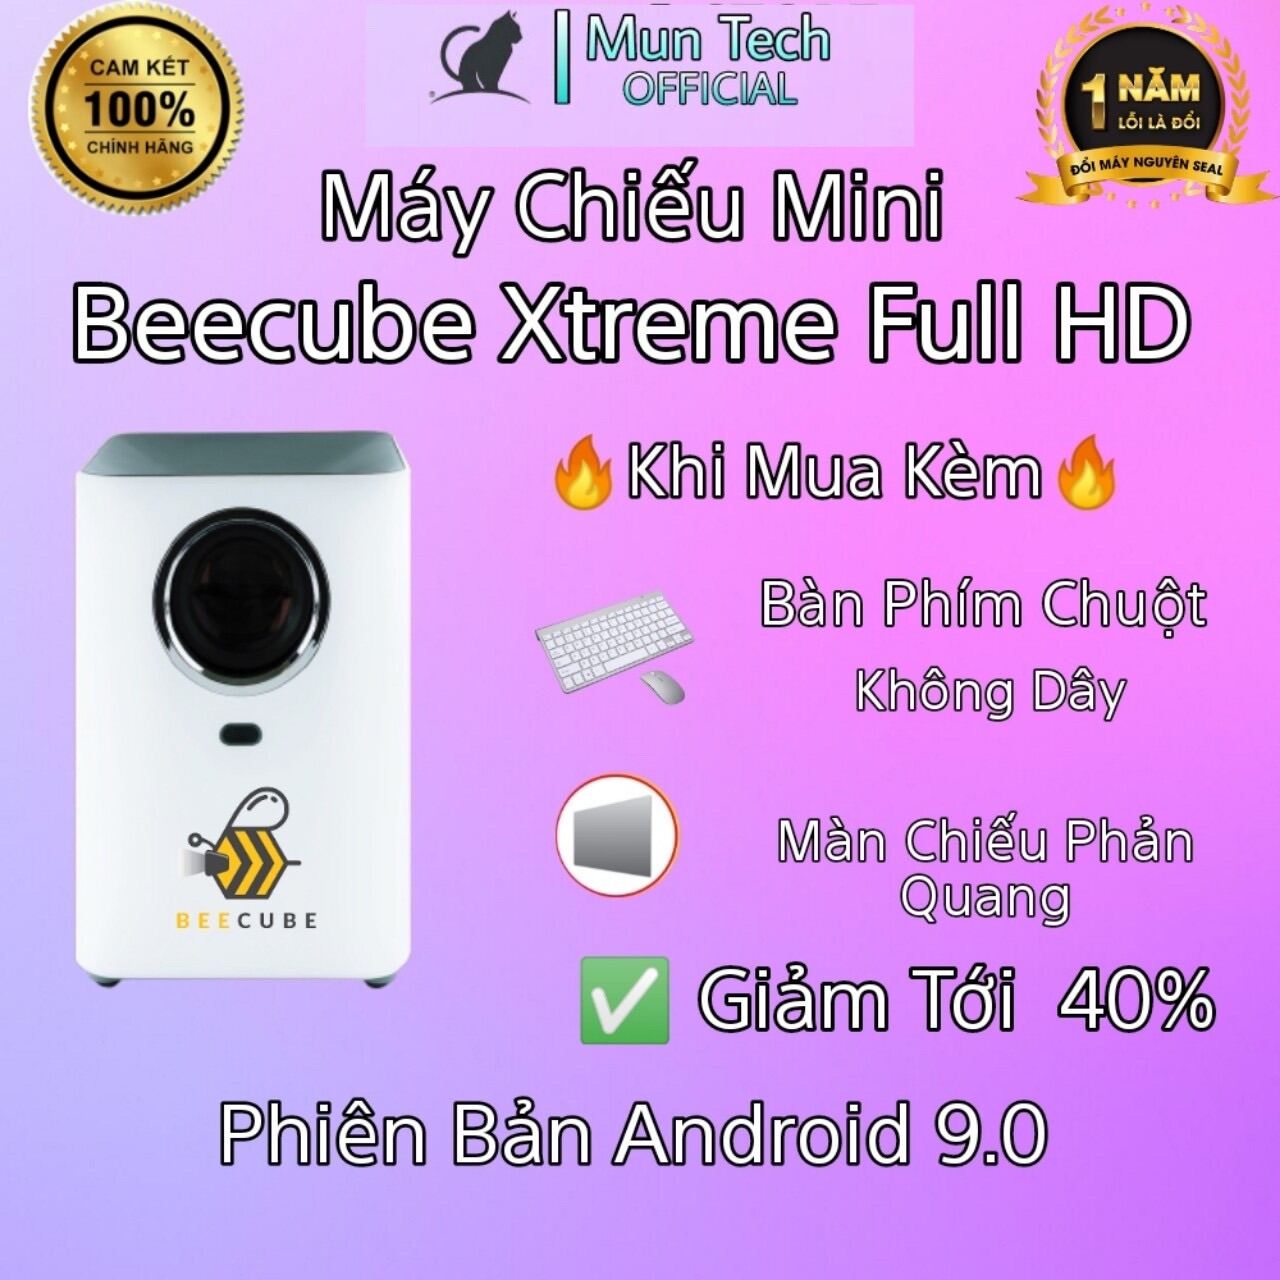 [Trả góp 0%]Siêu Máy Chiếu BEECUBE Xtreme - Độ Phân Giải FullHD 1080P - Độ Sáng Khủng 7000 lumens Và Máy Chiếu Beecube X2 Max Bảo Hành 12 Tháng Tặng kèm Màn Giá Đỡ Và Dây HDMI